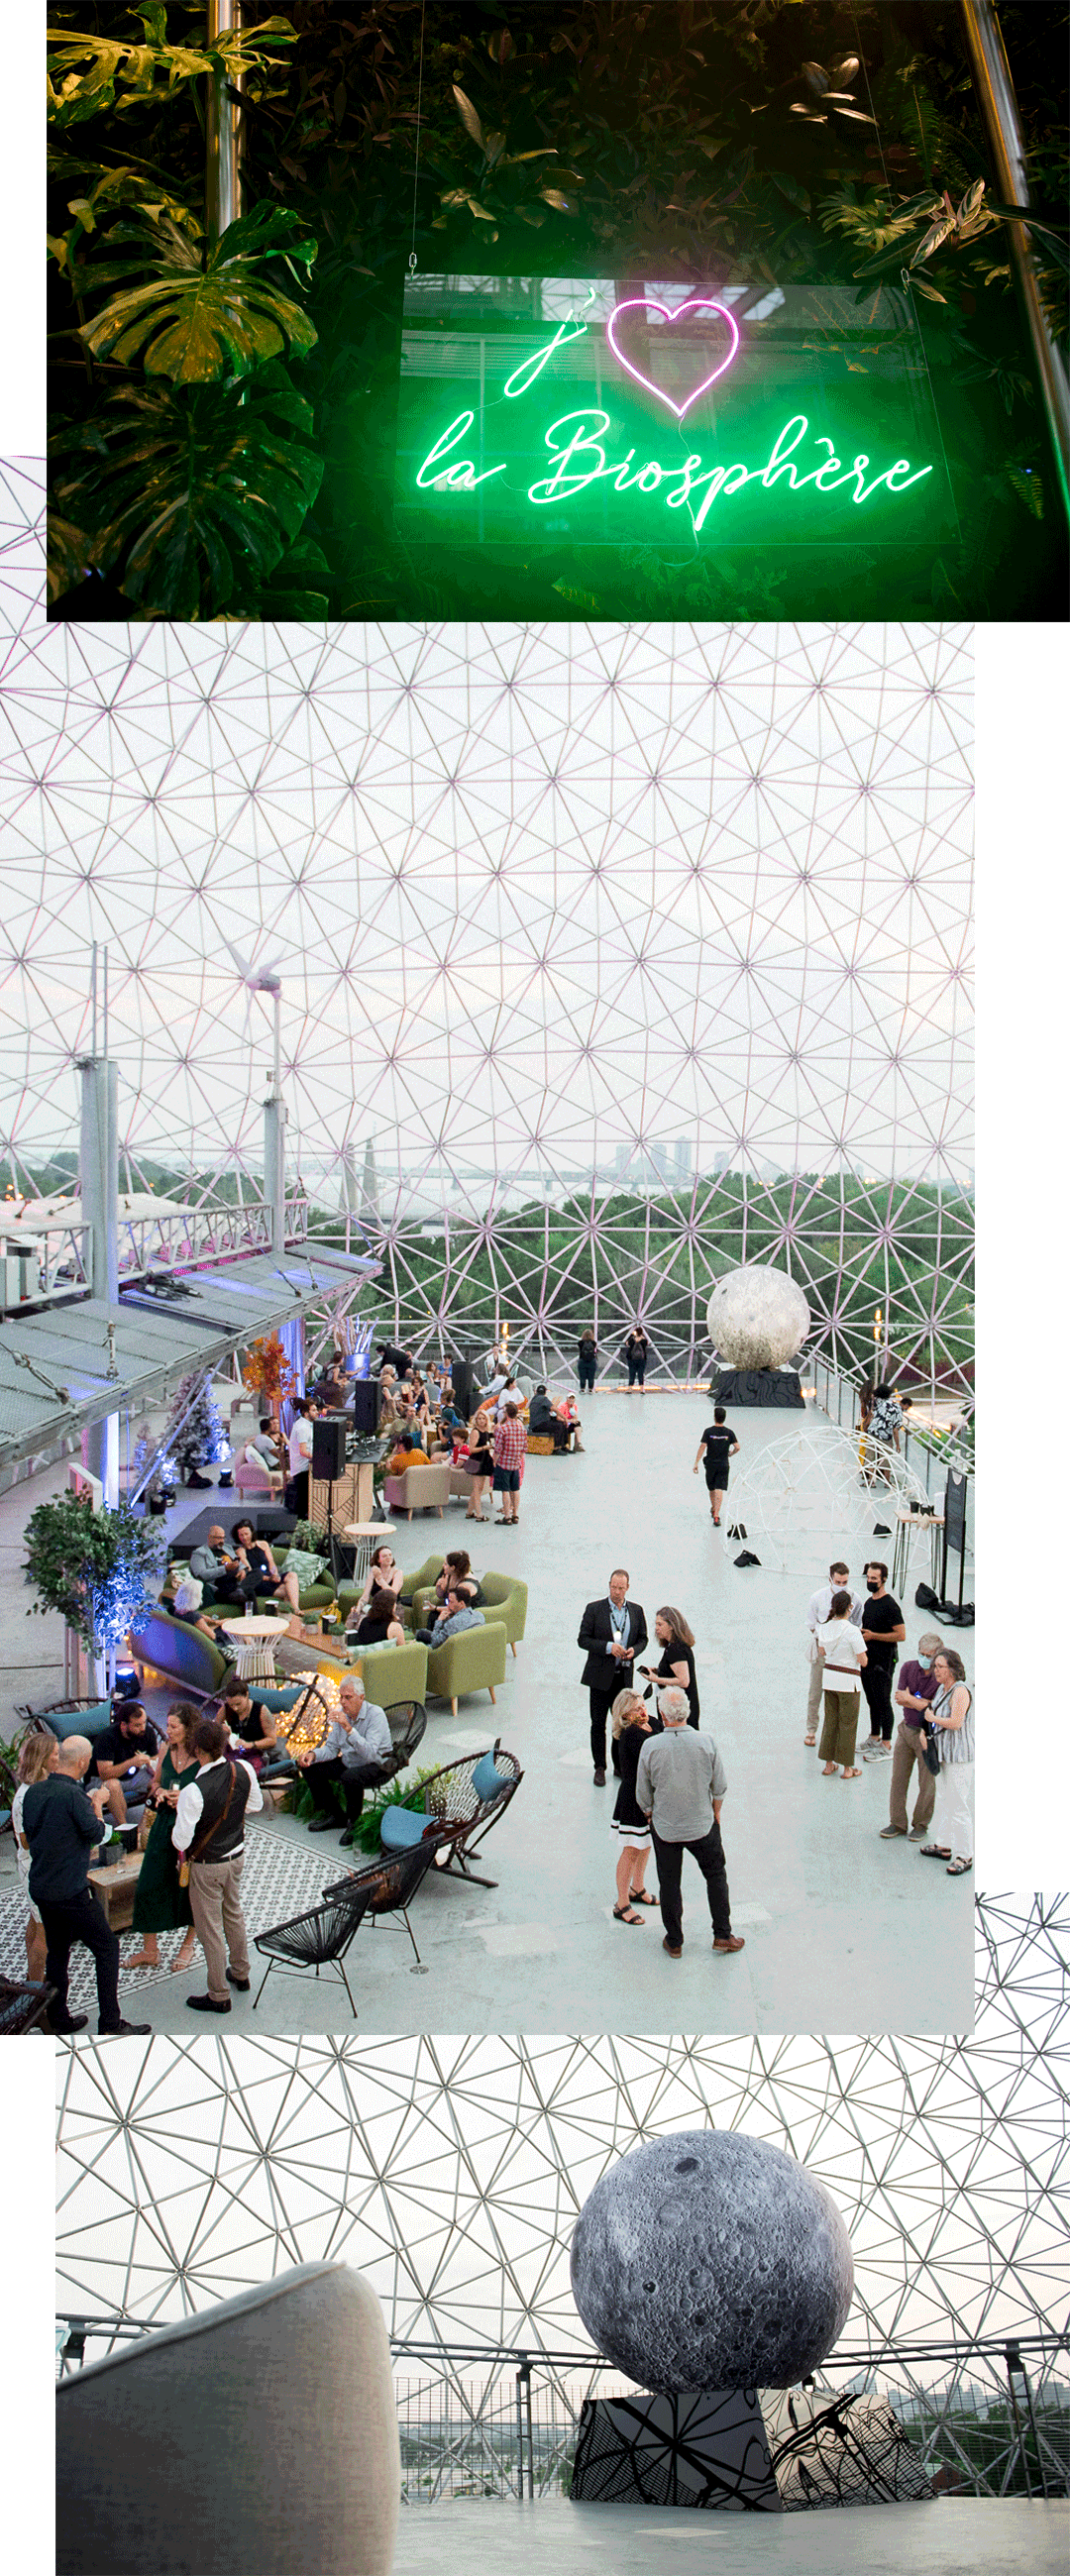 Biosphère, una noche utópica en el museo | MASSIVart - Eventos creativos y producción de pop-ups